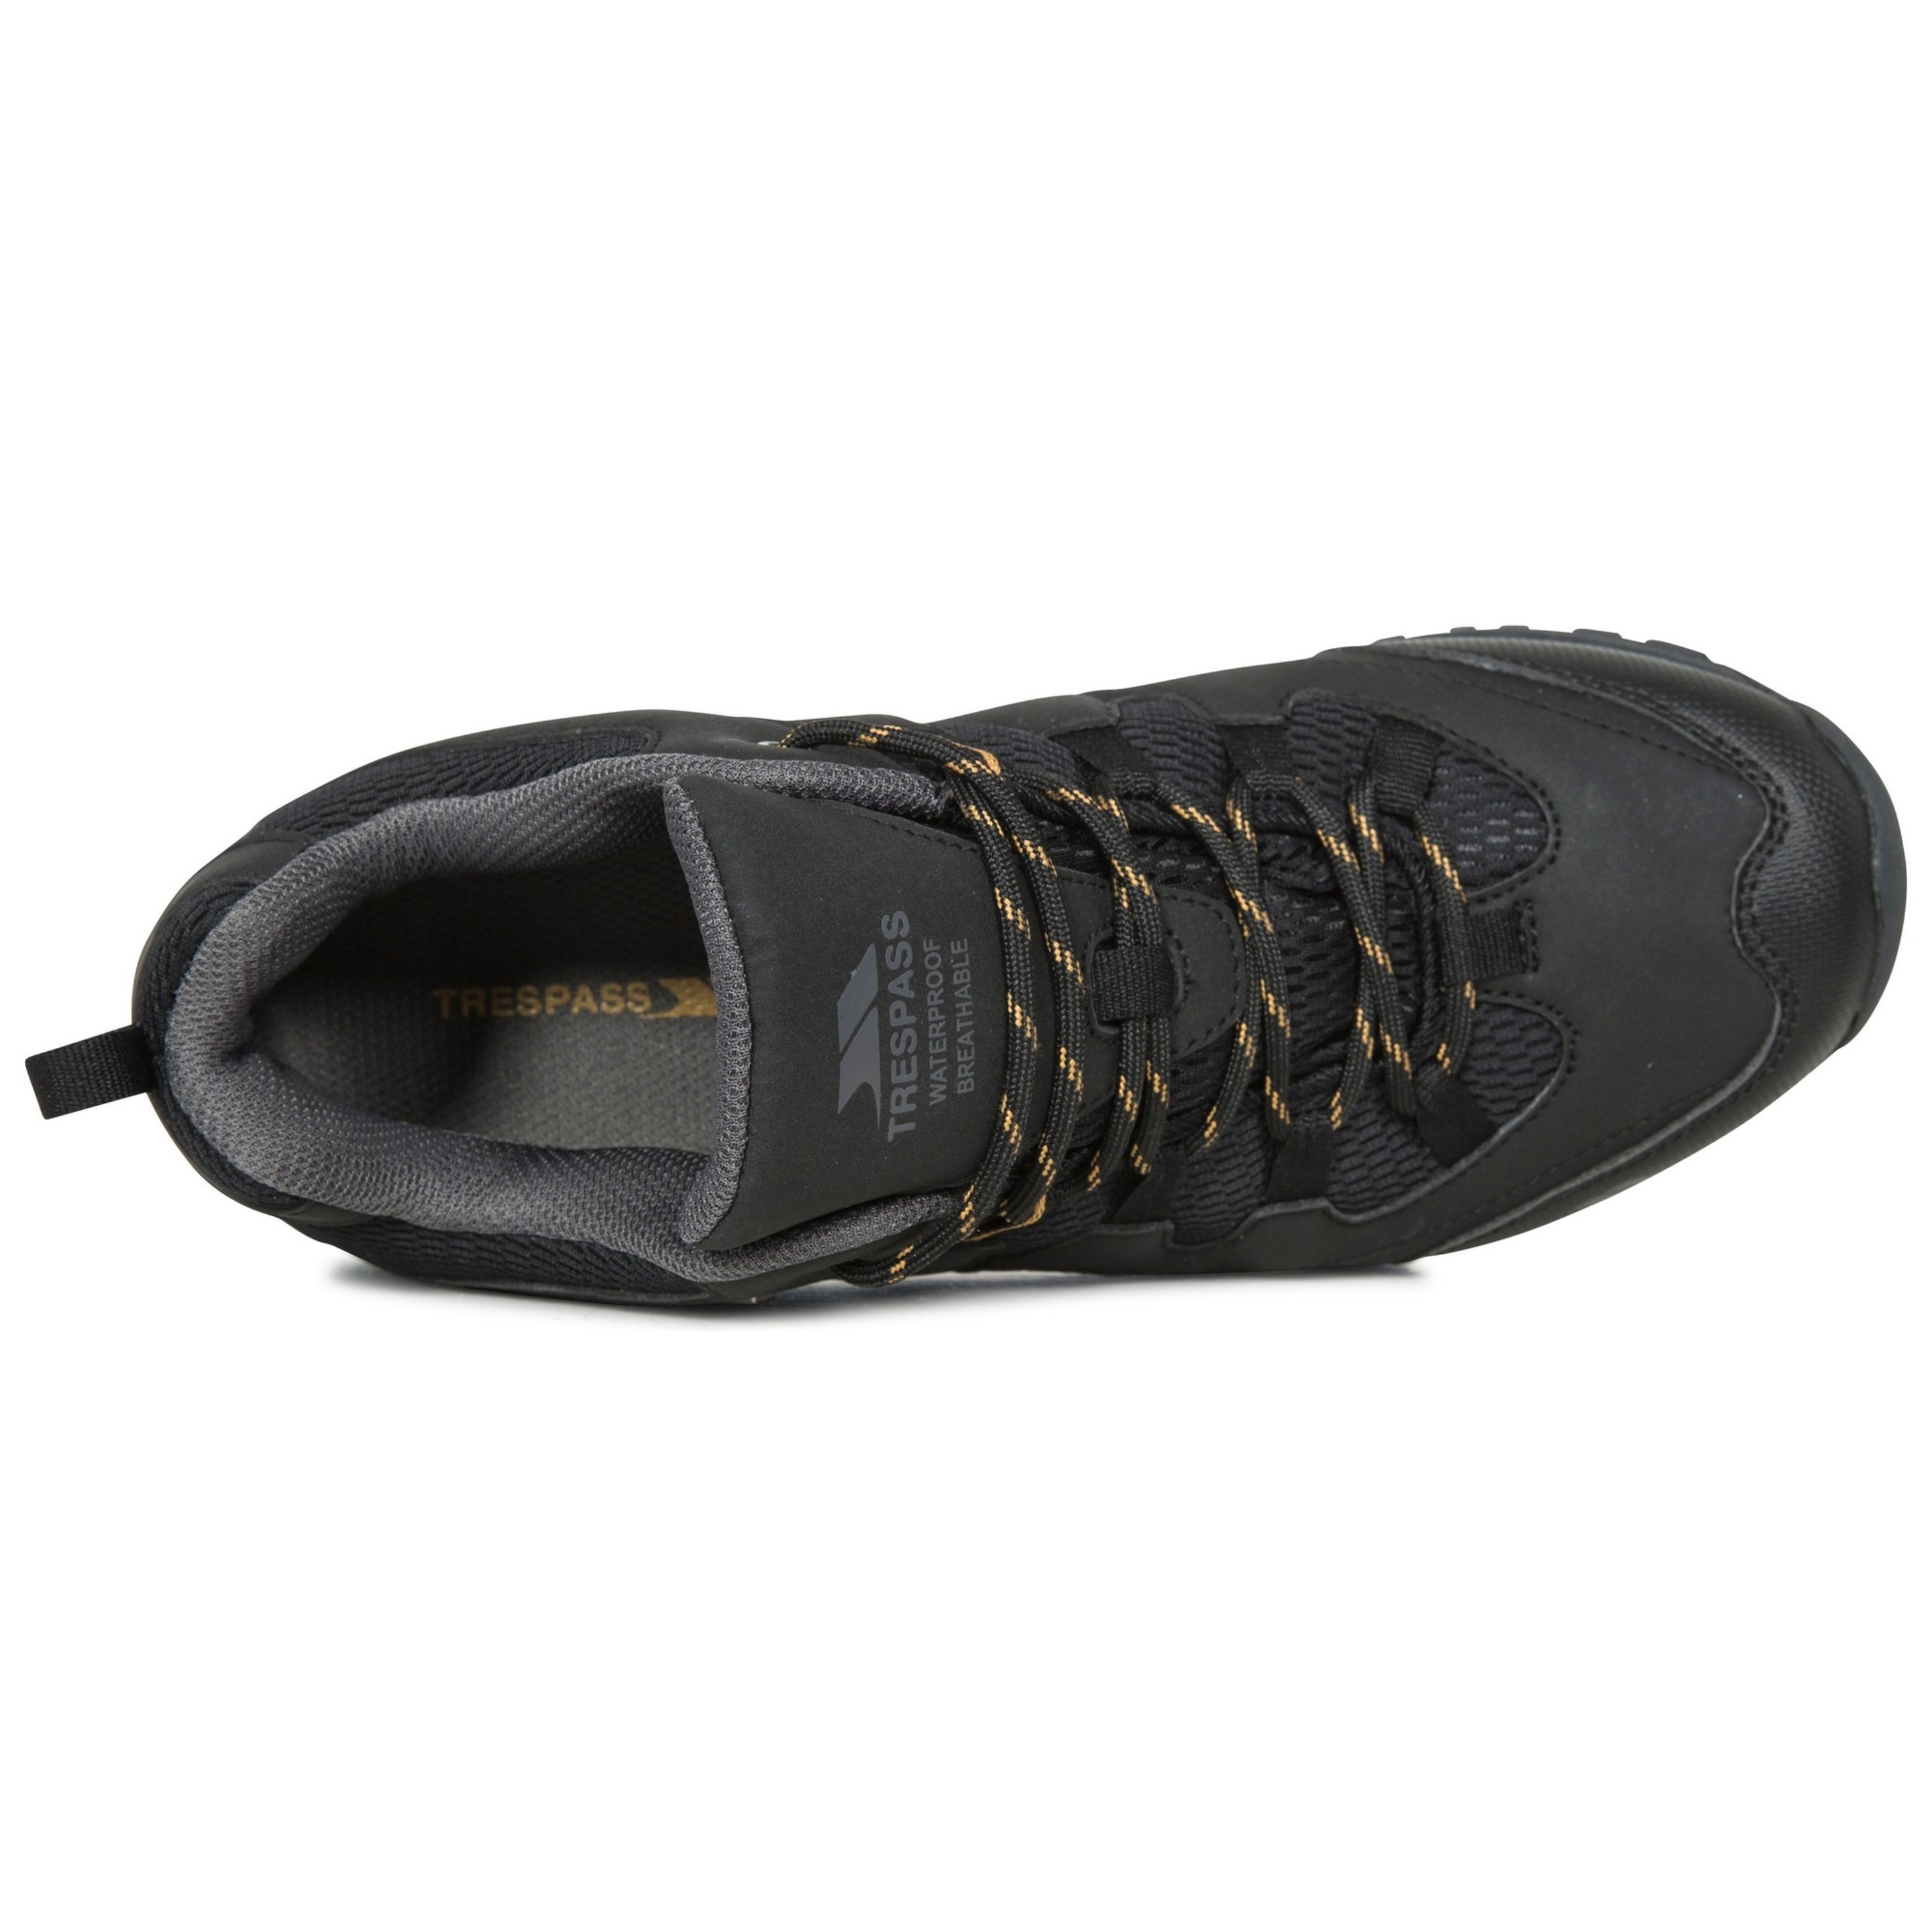 Homens Finley Sapatos De Caminhada De Corte Baixo Trespass (Preto)